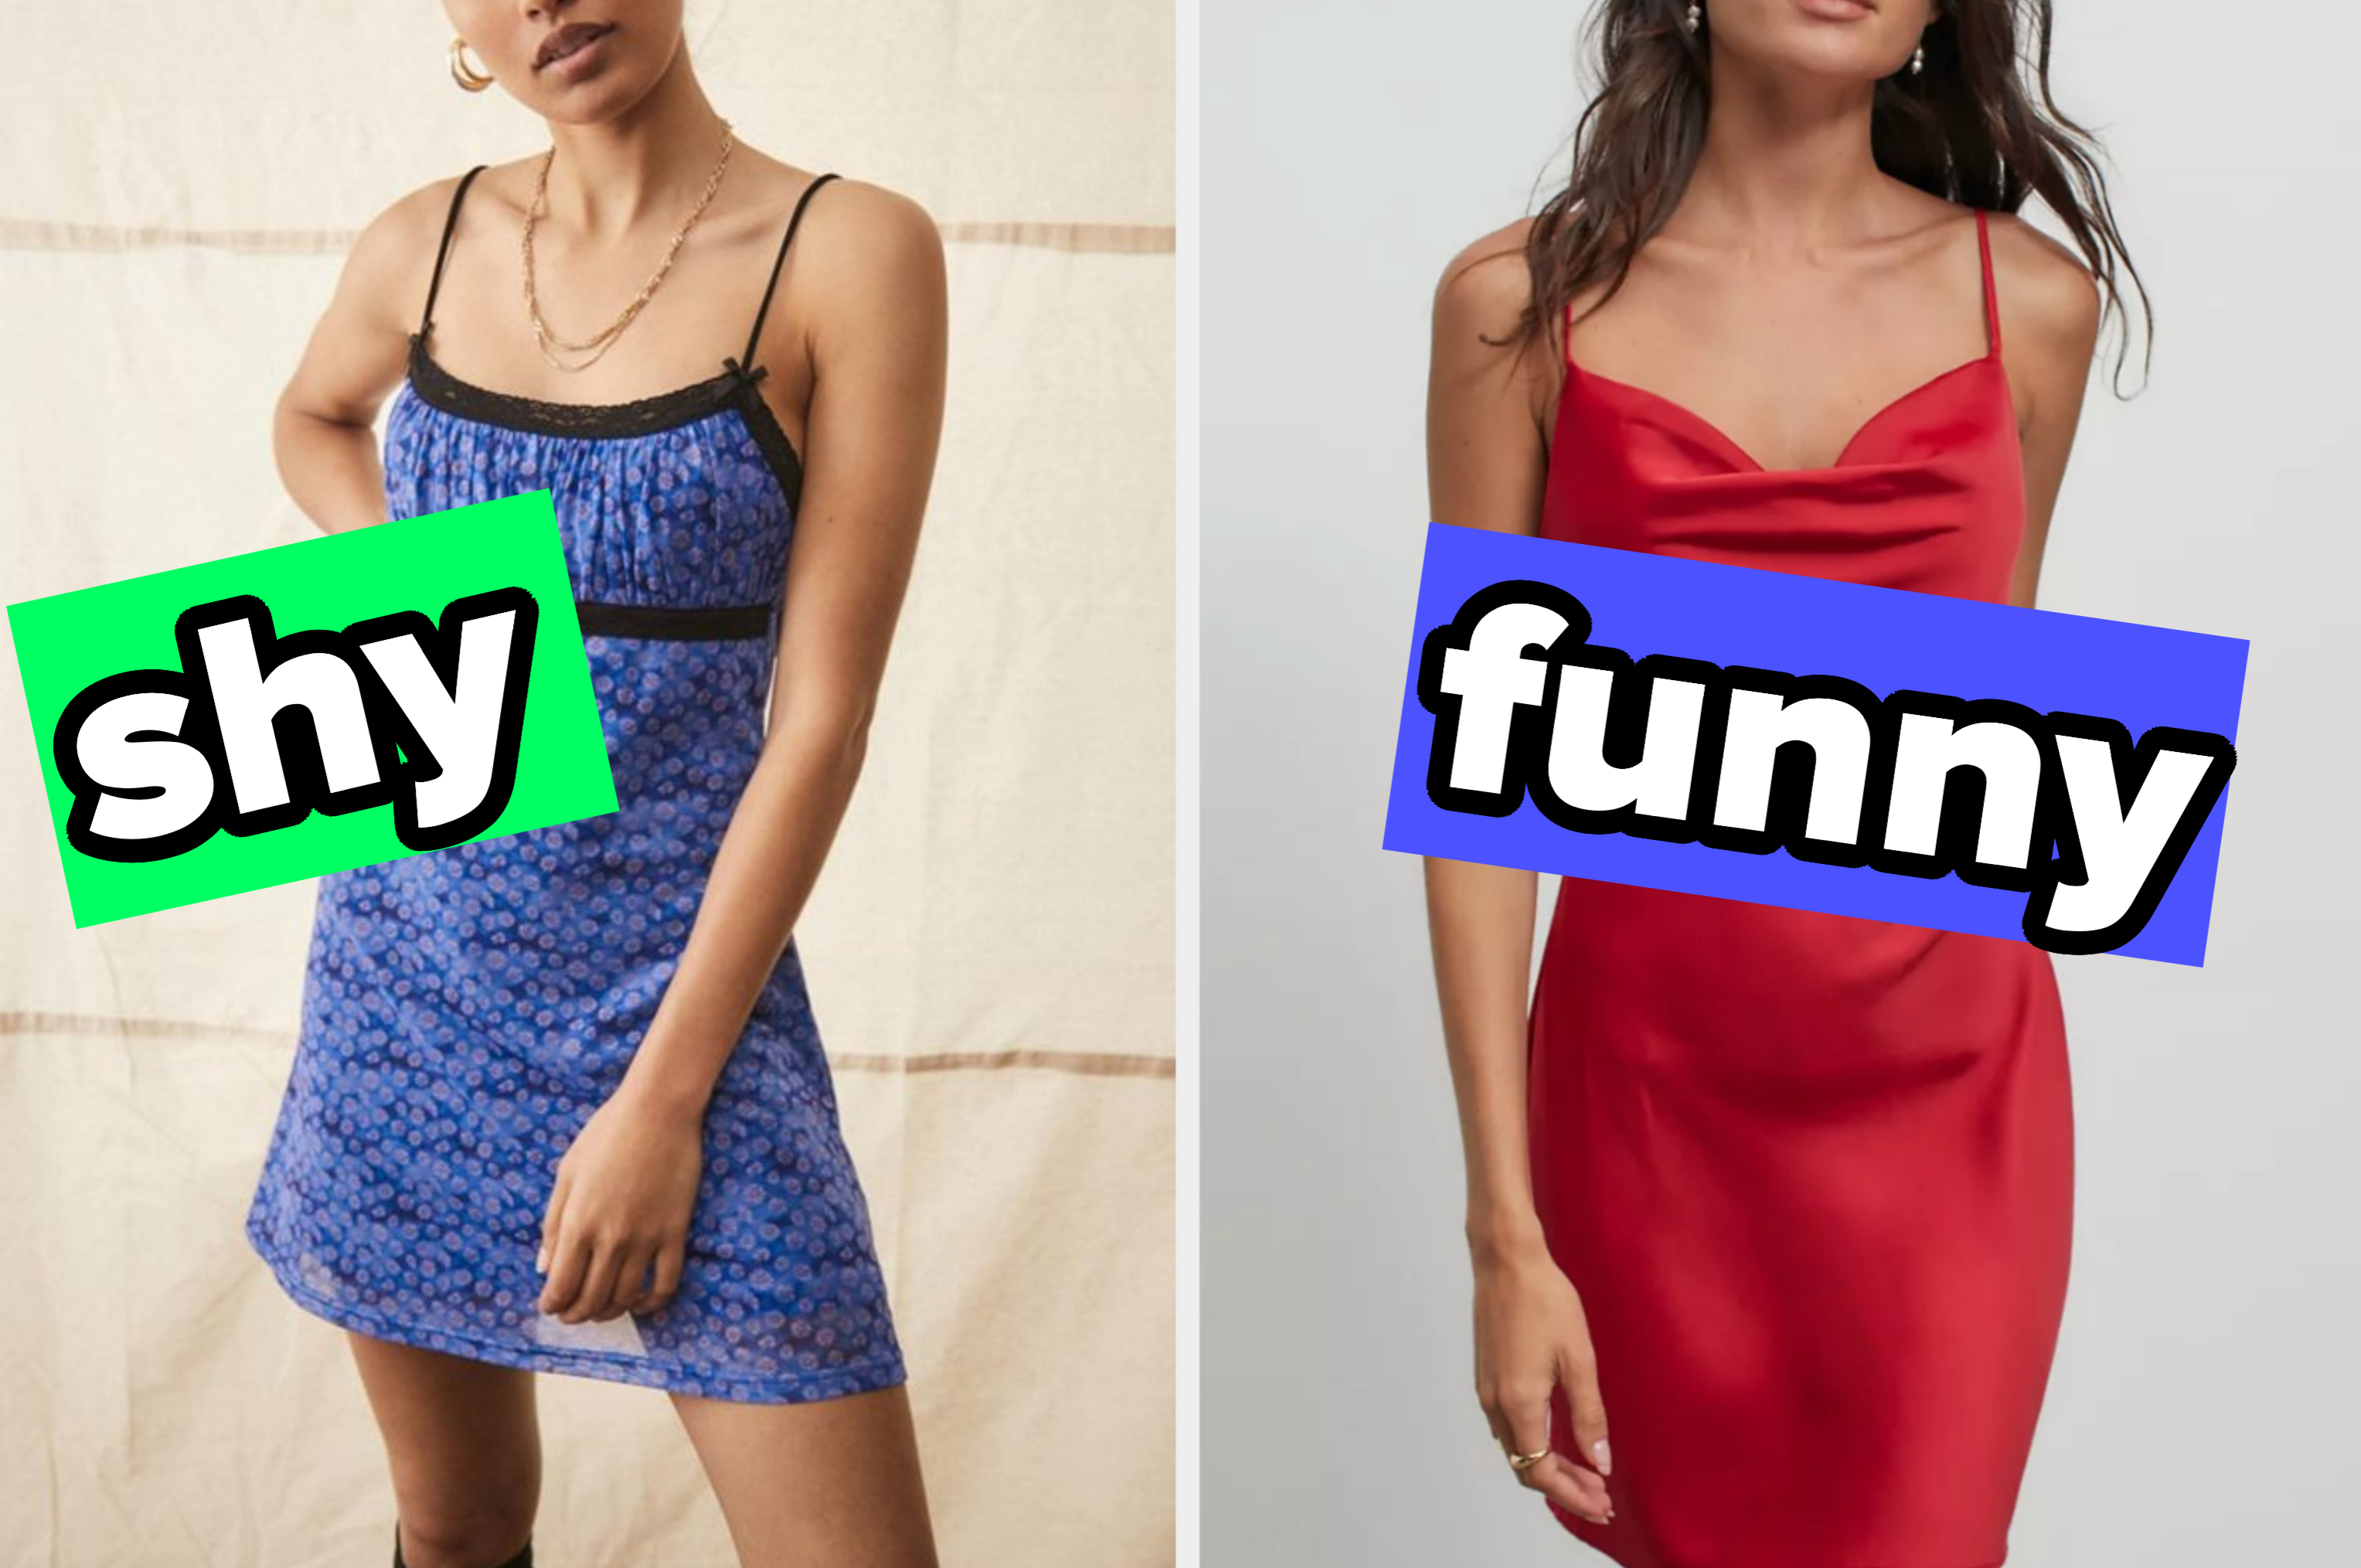 Girls, let's dress up! Pick your fav look 🖤 Full